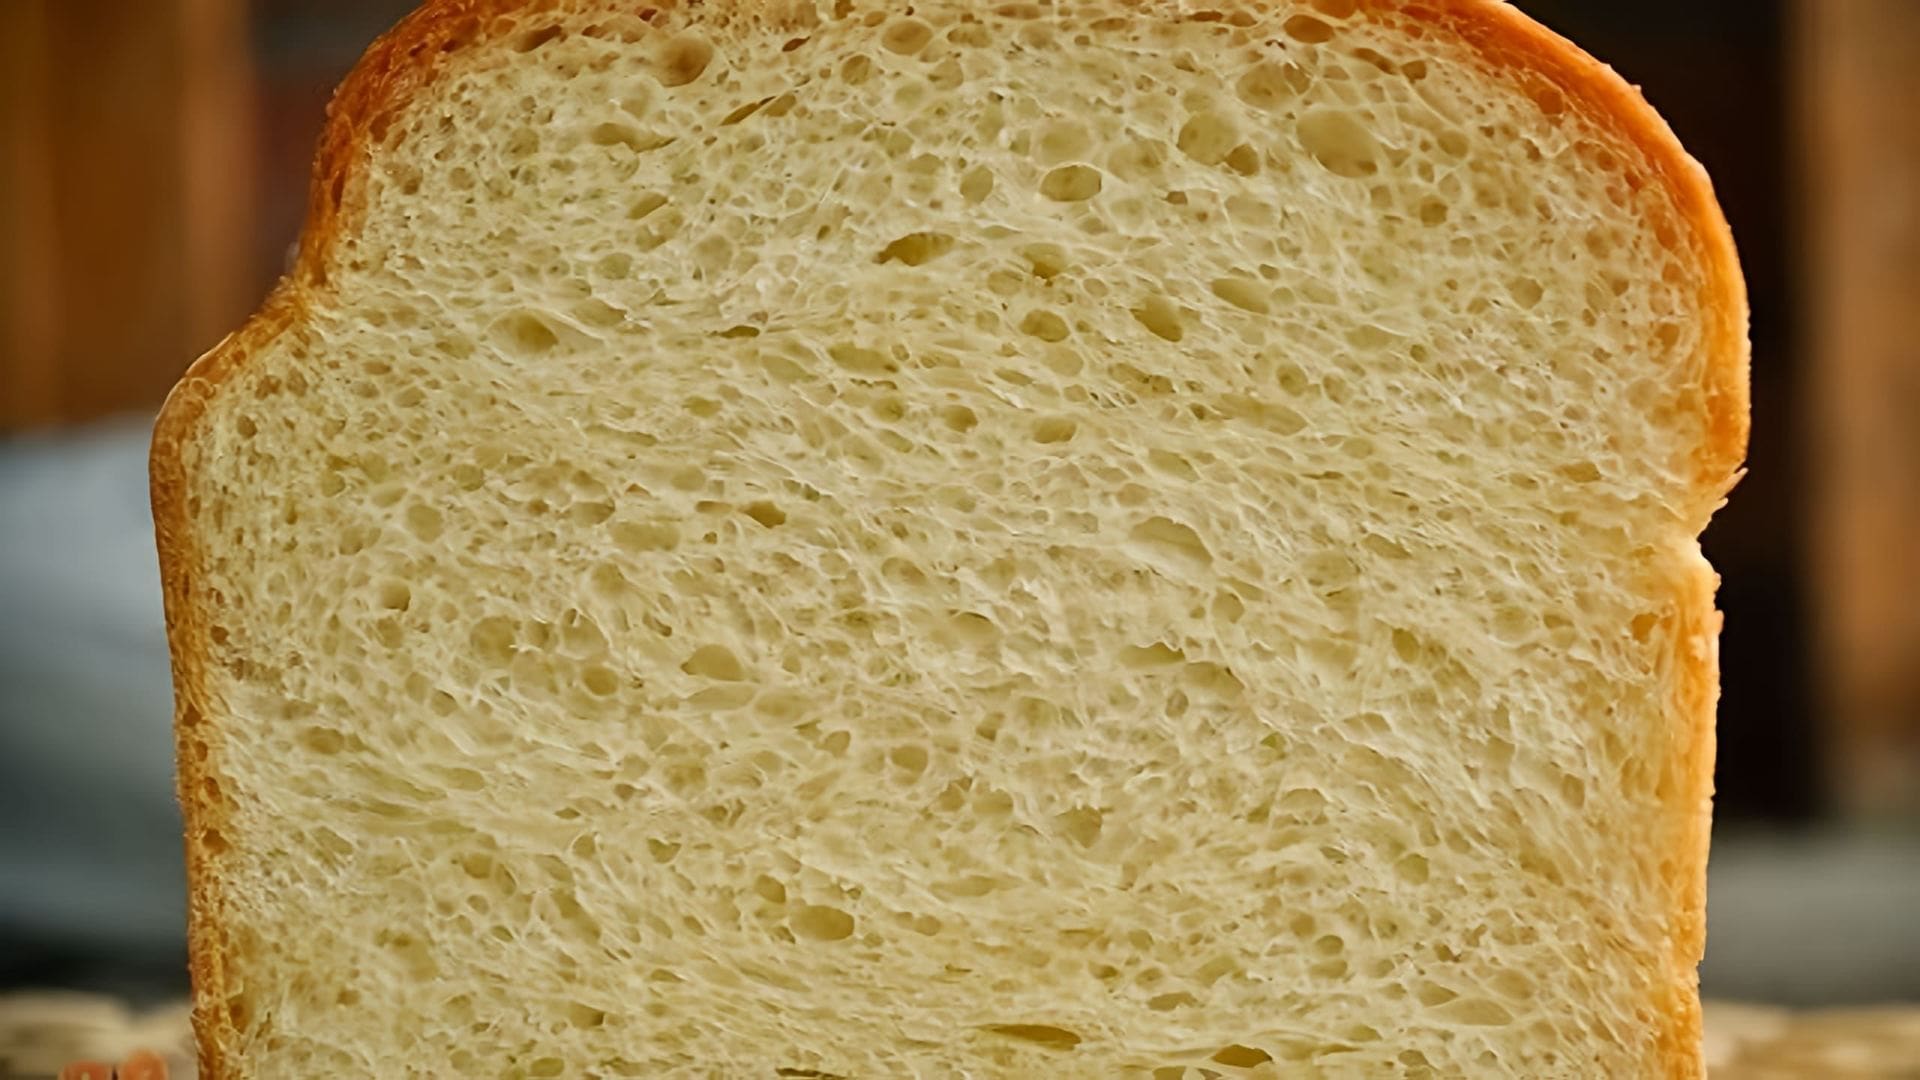 В этом видео демонстрируется процесс приготовления домашнего белого формового хлеба, который также называют сайкой или кирпичиком